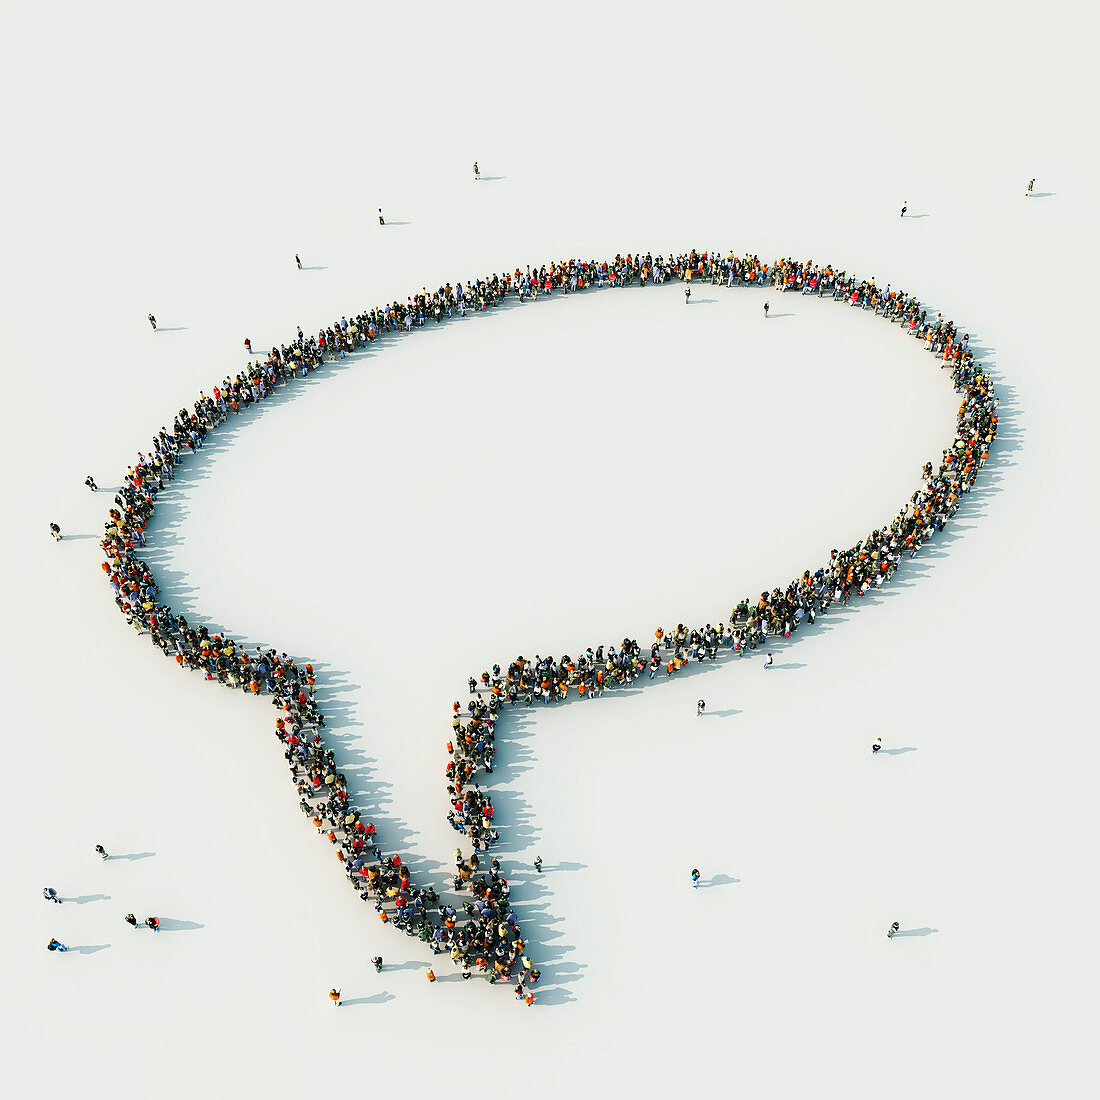 People arranged in speech bubble, illustration